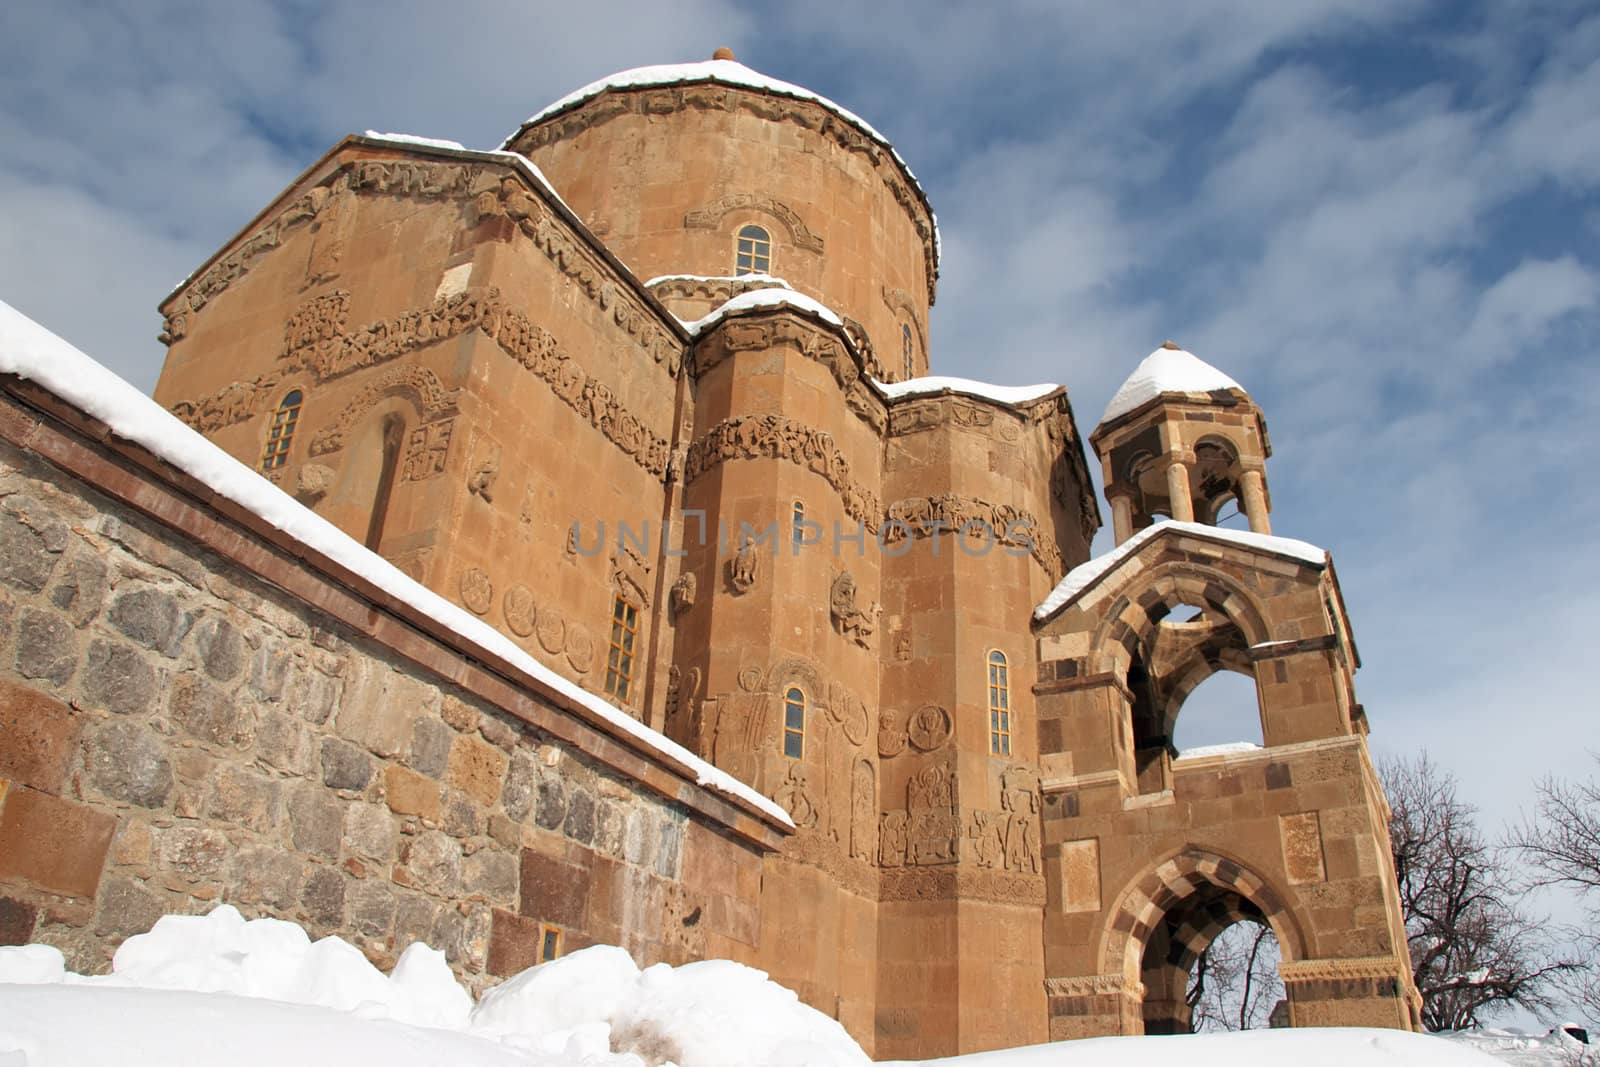 Armenian church at Akdamar, Turkey by azotov